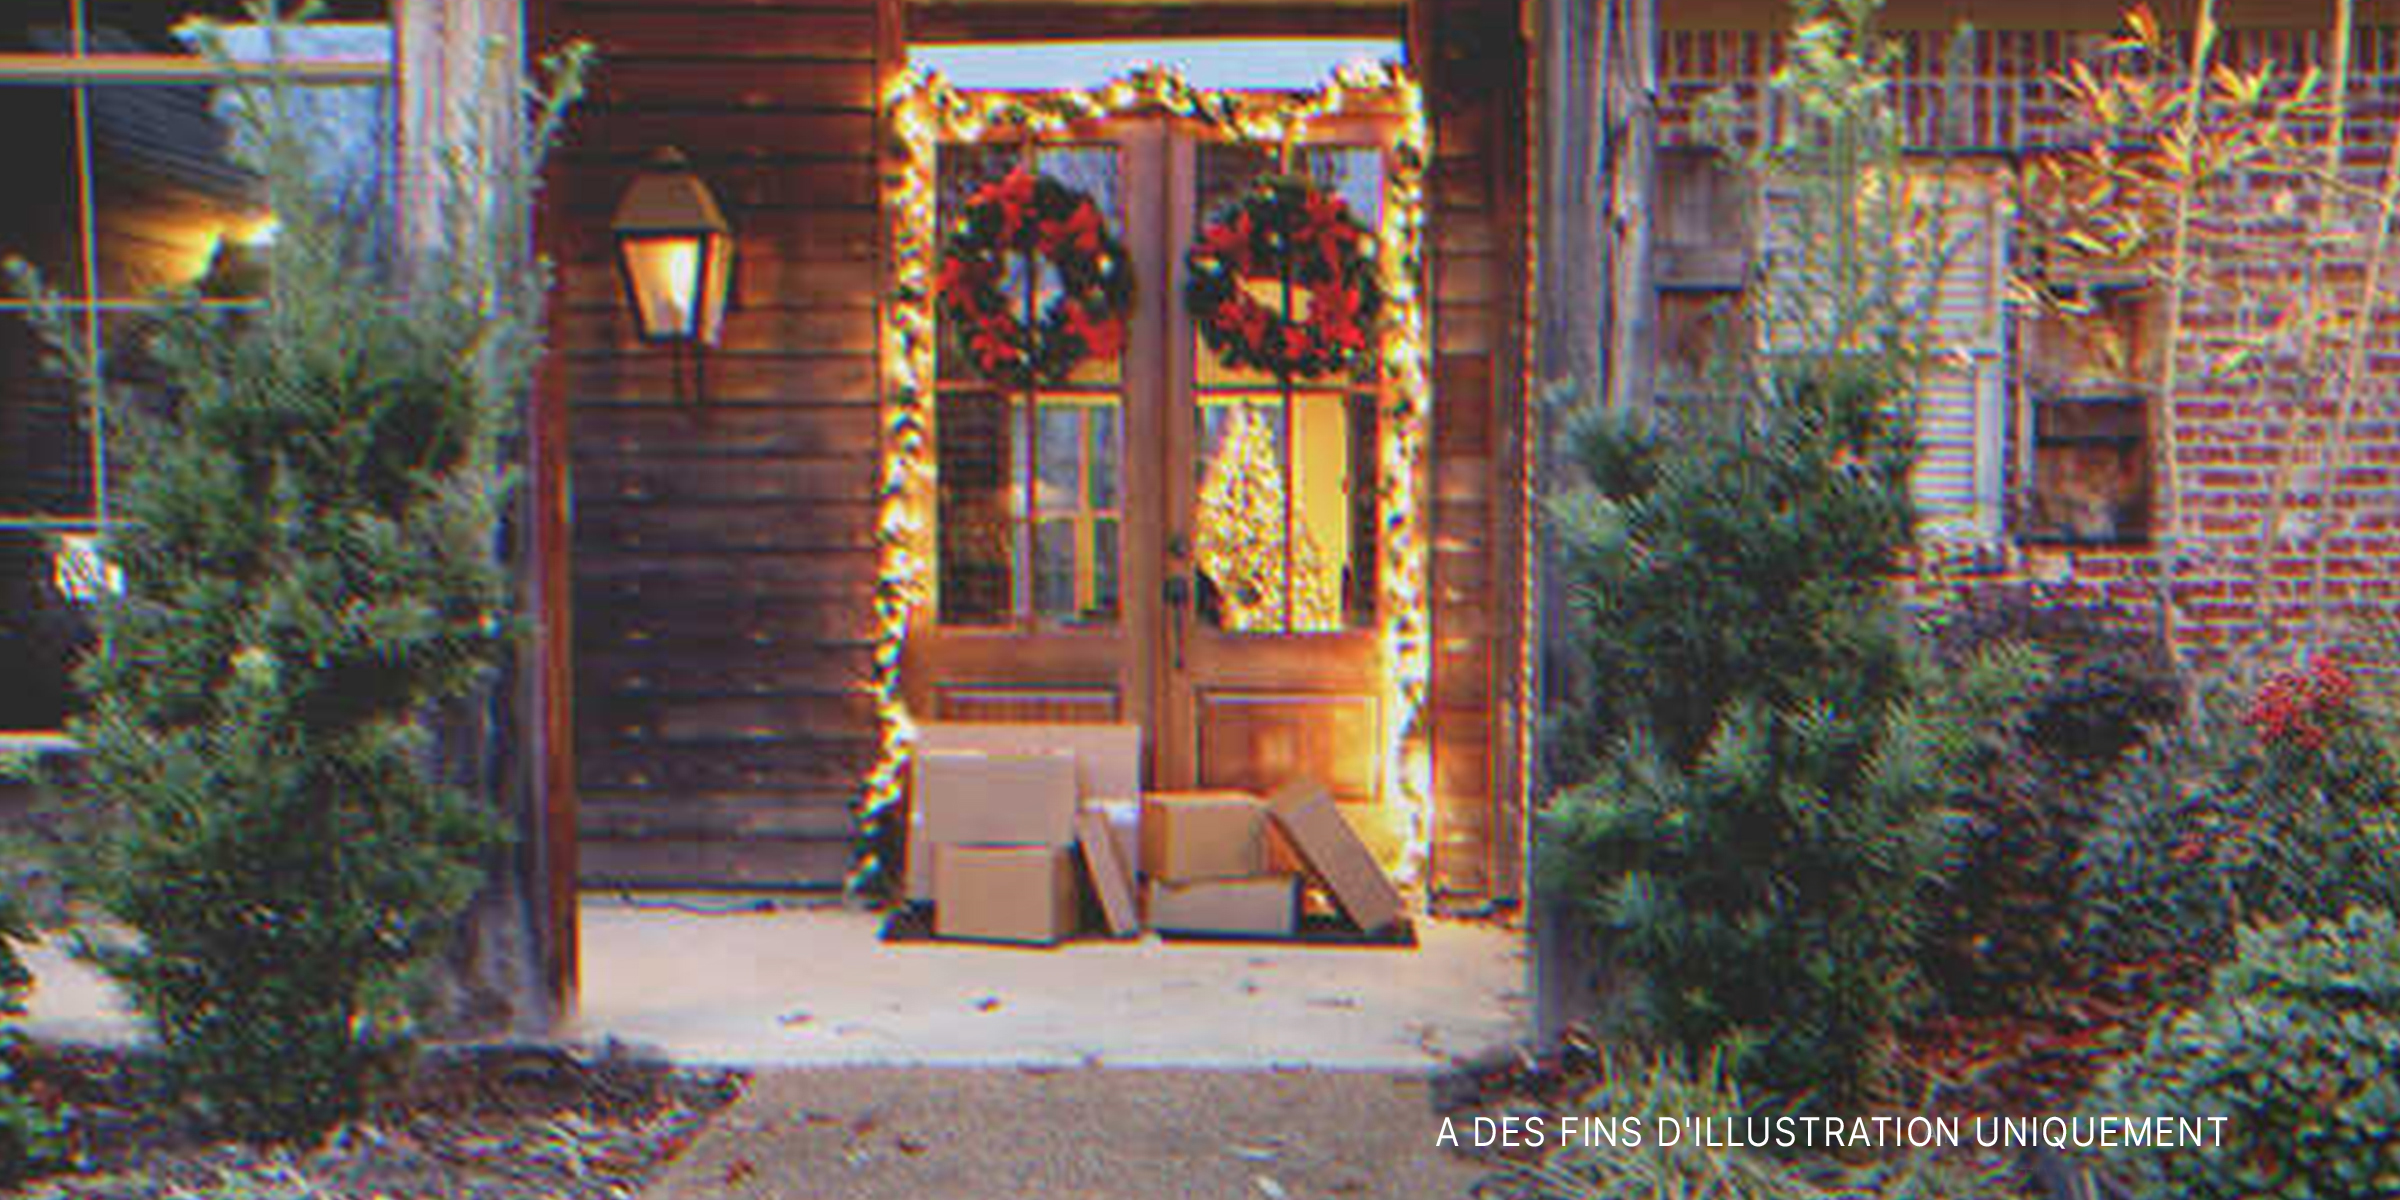 Piles de cartons à l'entrée | Source : Shutterstock